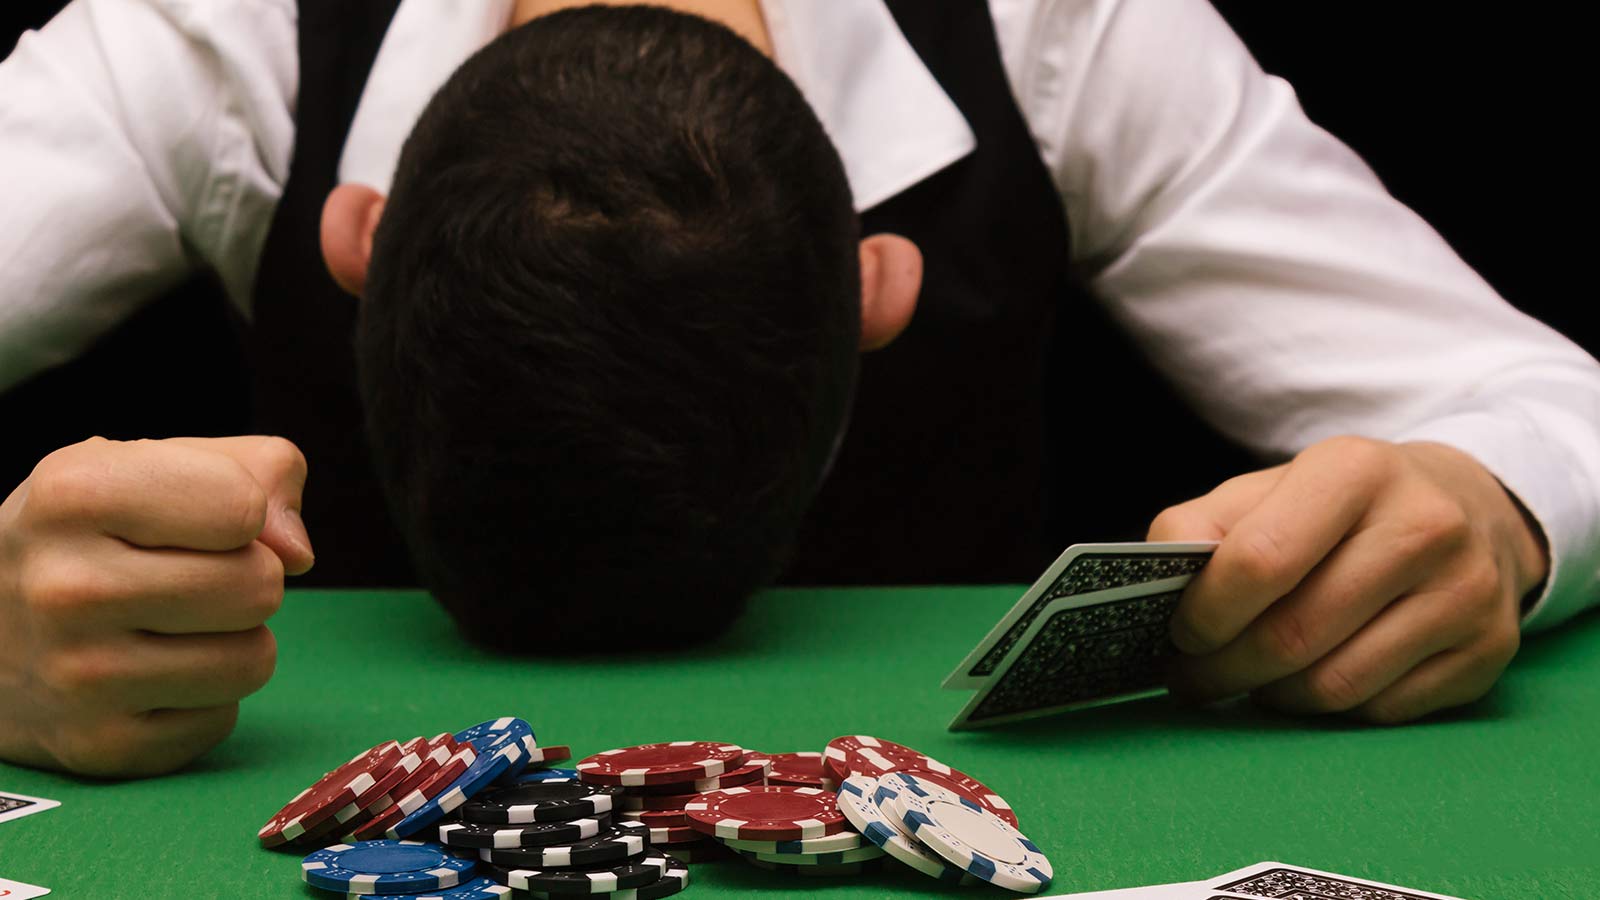 La jocurile de noroc, cei mai mulţi sunt obligaţi să piardă pentru ca doar câţiva să câştige